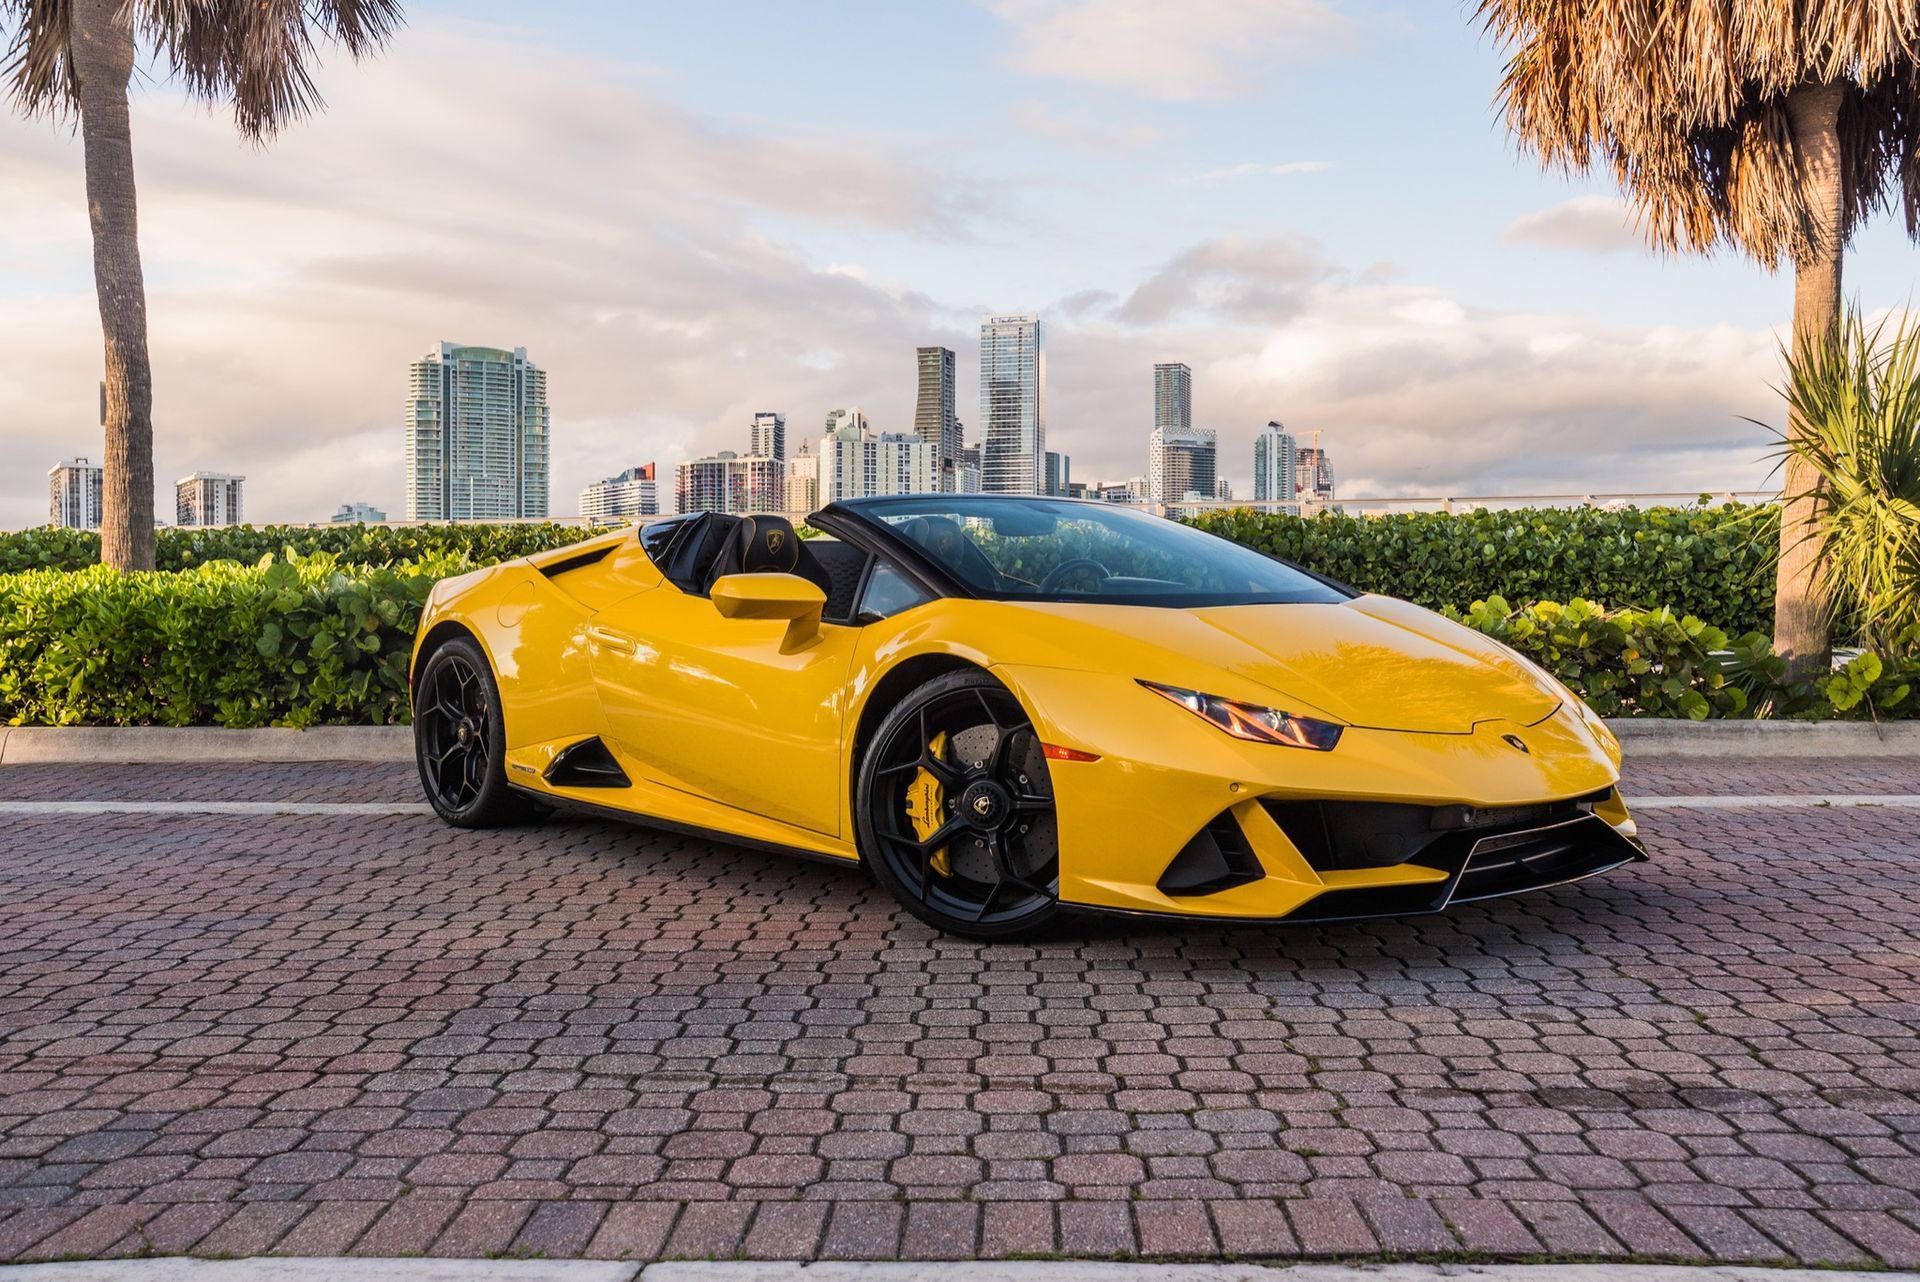 Lamborghini Huracan EVO Giallo - Yellow